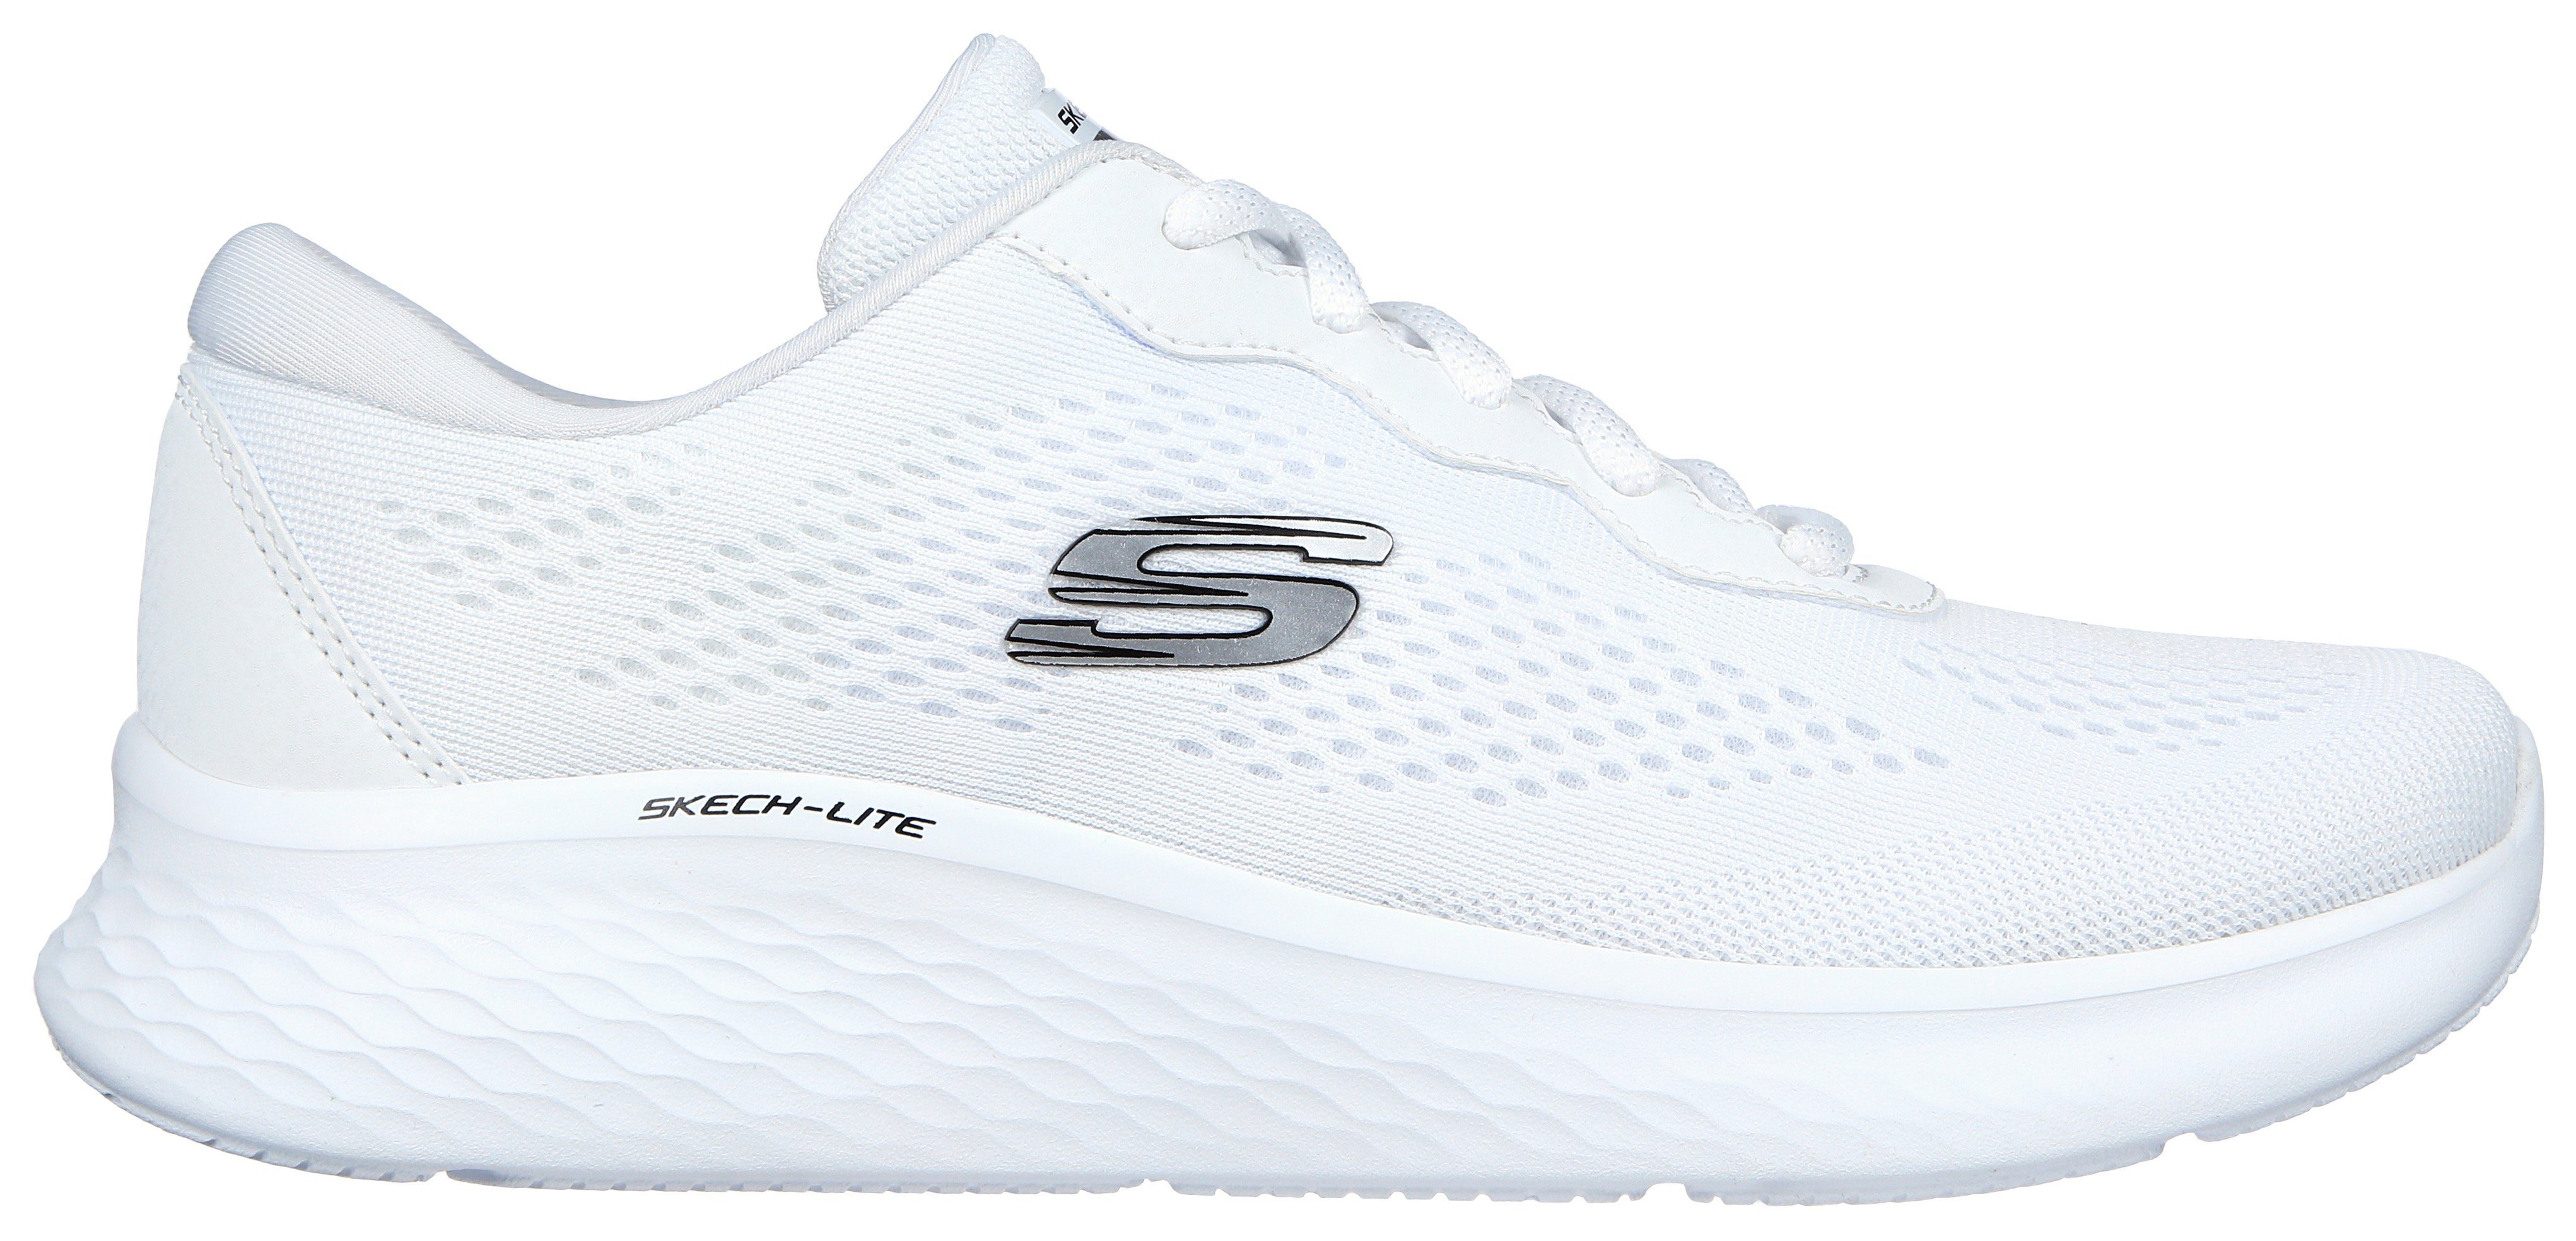 für Sneaker weiß-pink - SKECH-LITE PRO geeignet Maschinenwäsche Skechers